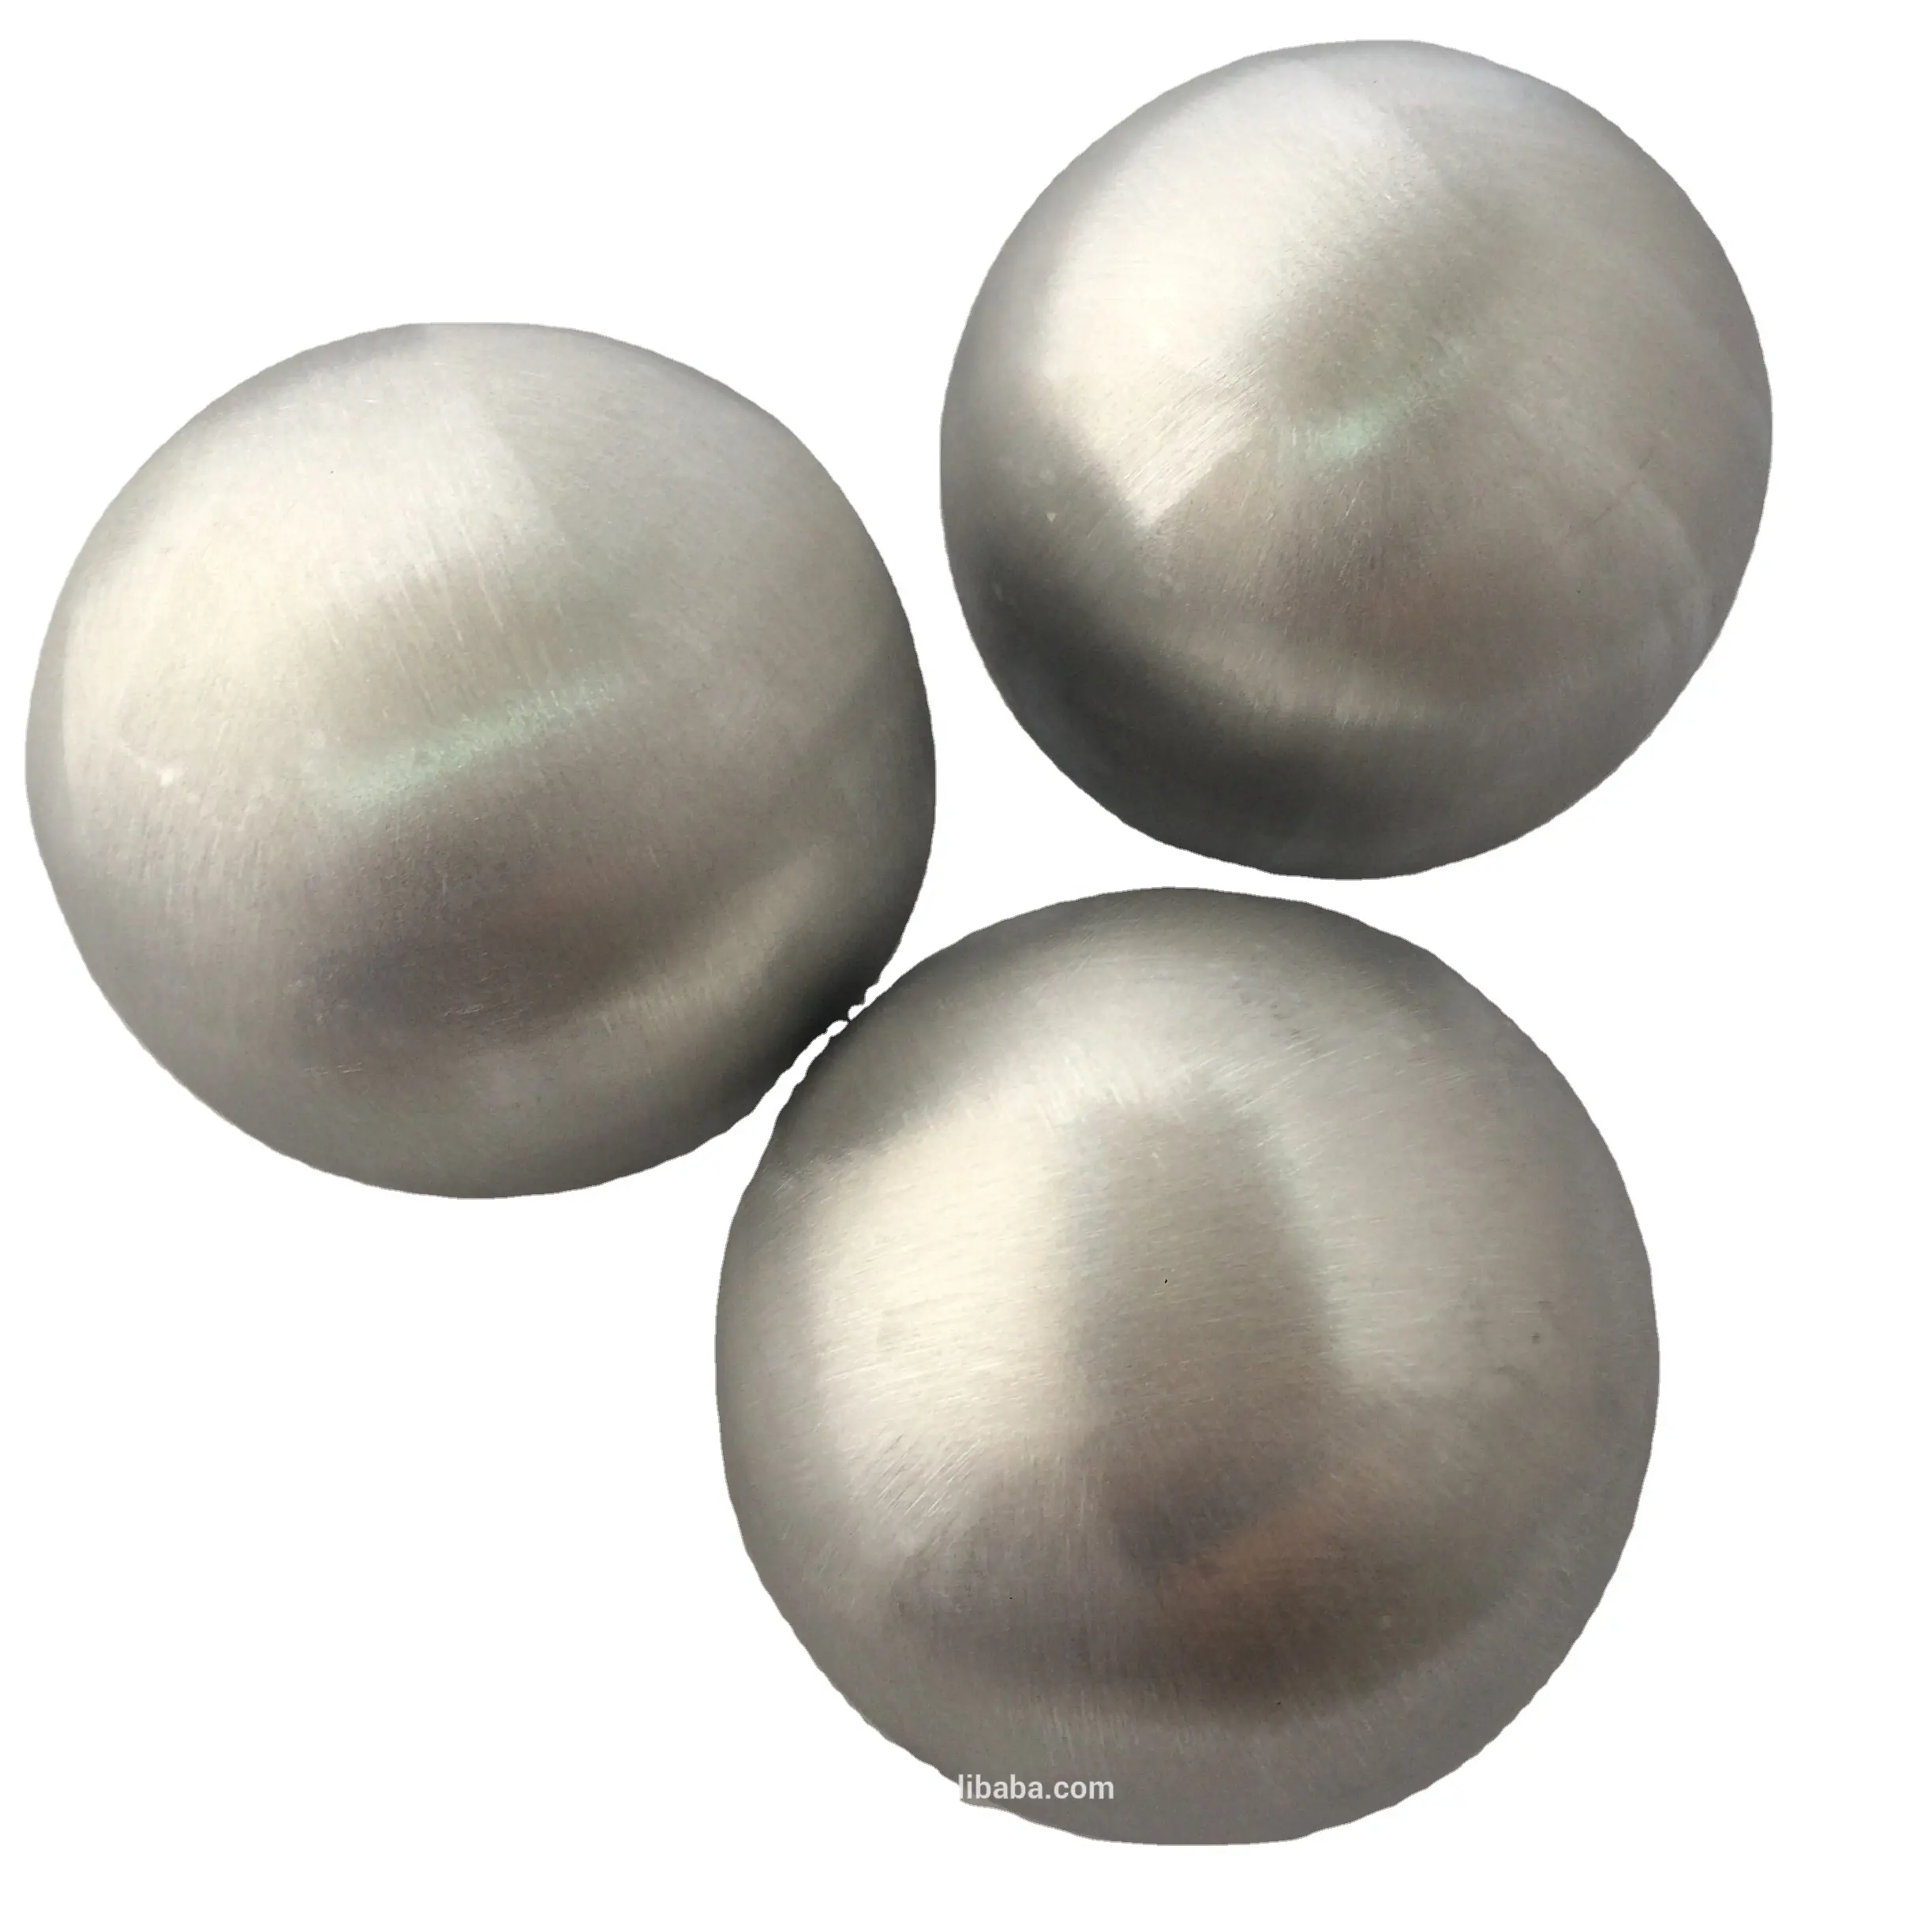 Сплошной алюминиевый шар. Алюминиевый шарик. Шарики из алюминия. Полый шарик. Полый металлический шар из алюминия.